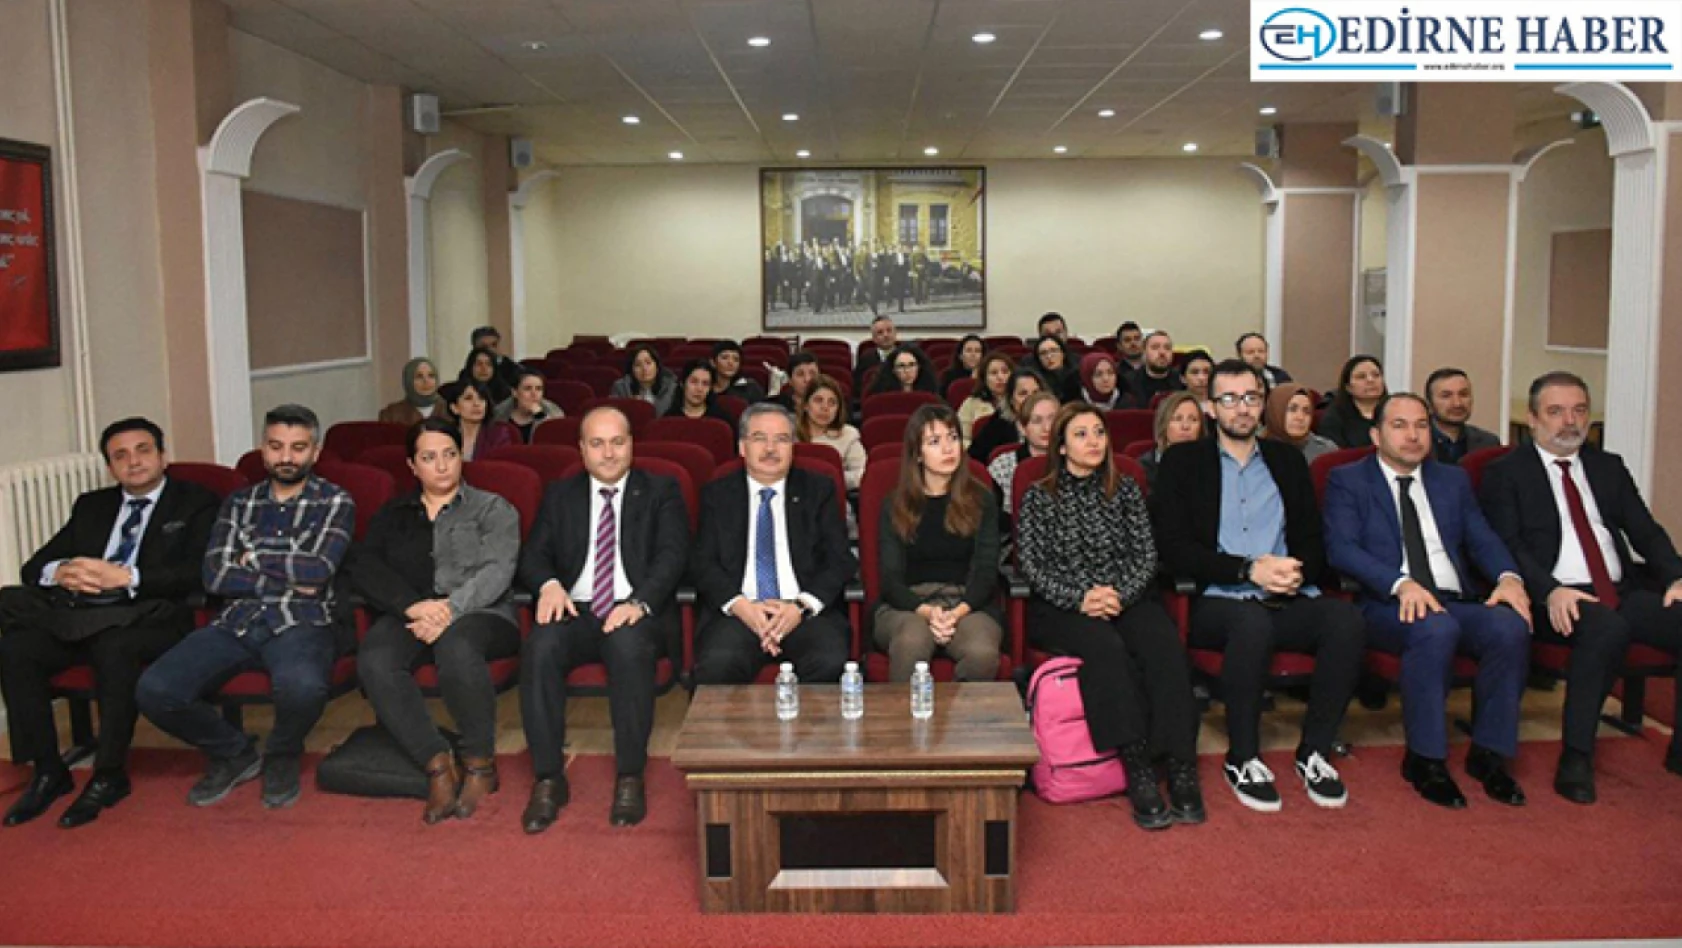 Edirne'de 30 öğretmene 5 gün toplam 35 saat eğitim verilecek